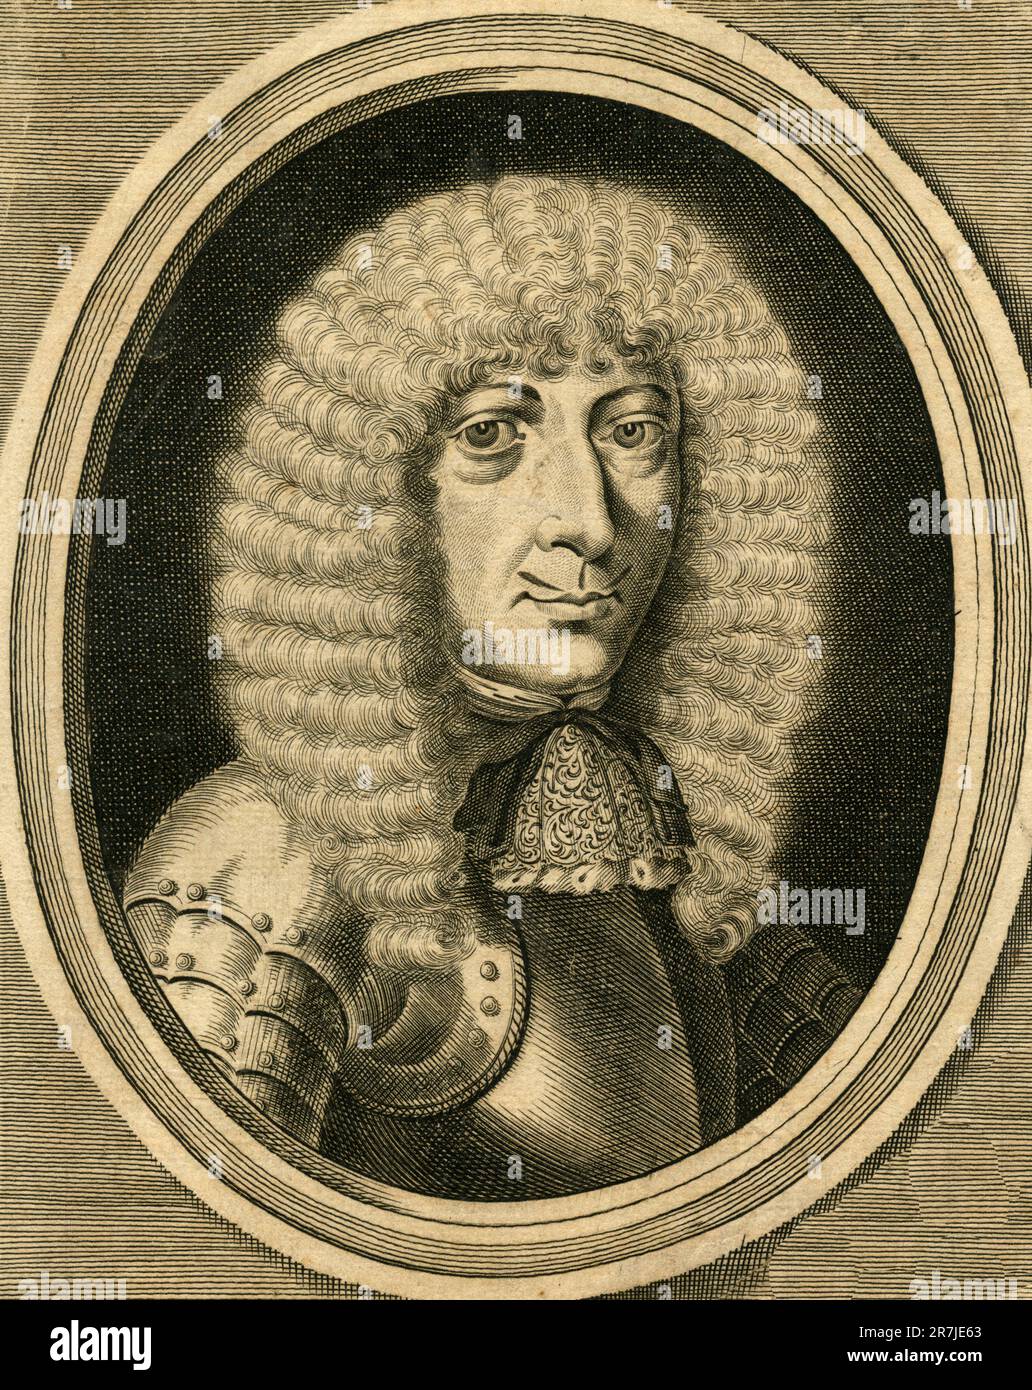 Portrait of Count Gaspar de Coligny, illustration, France 1800s Stock Photo